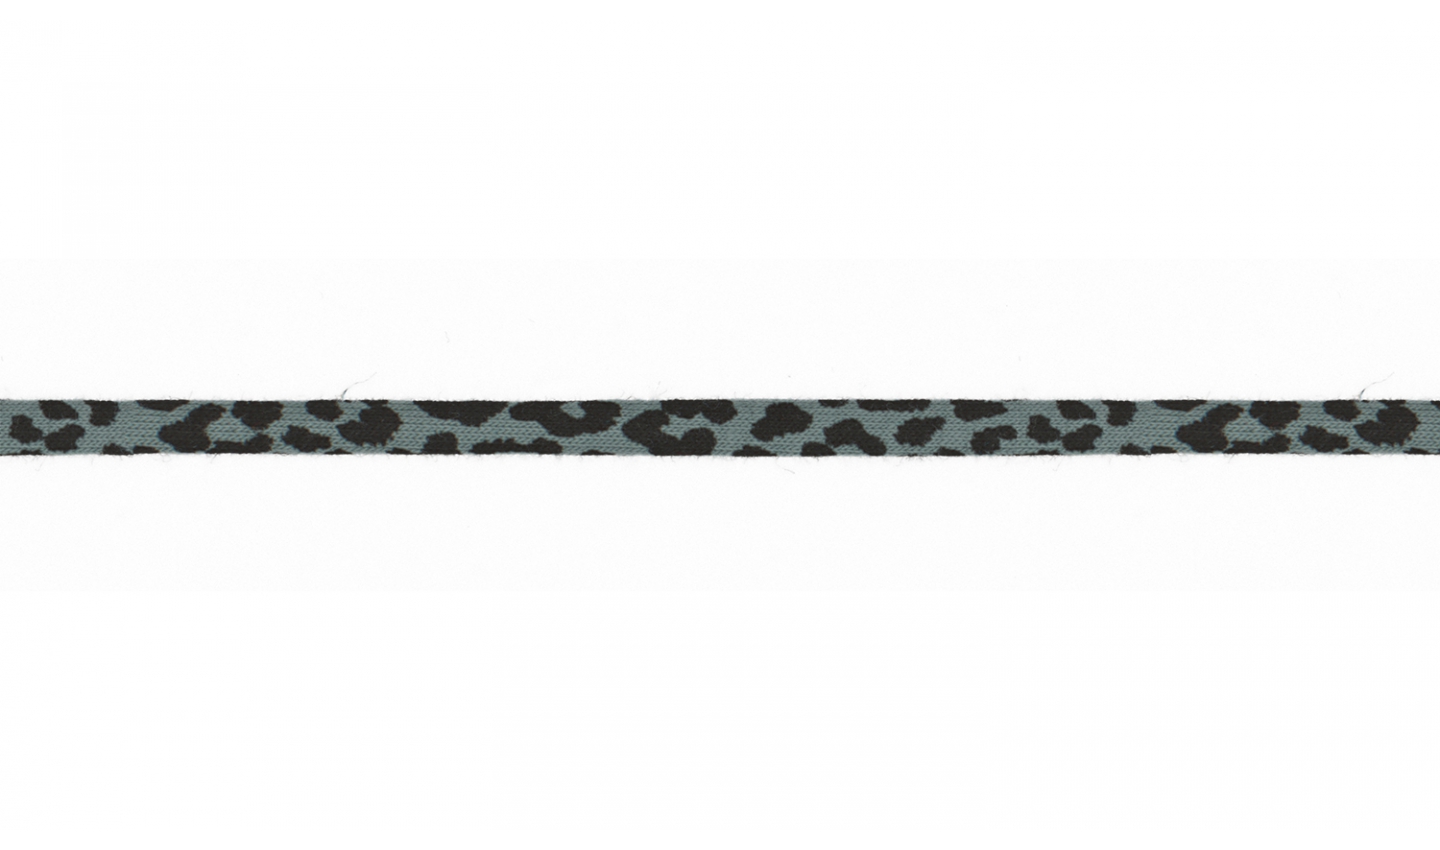 Jersey Kordel 6mm mit Leopardenmuster - dusty mint (023)  